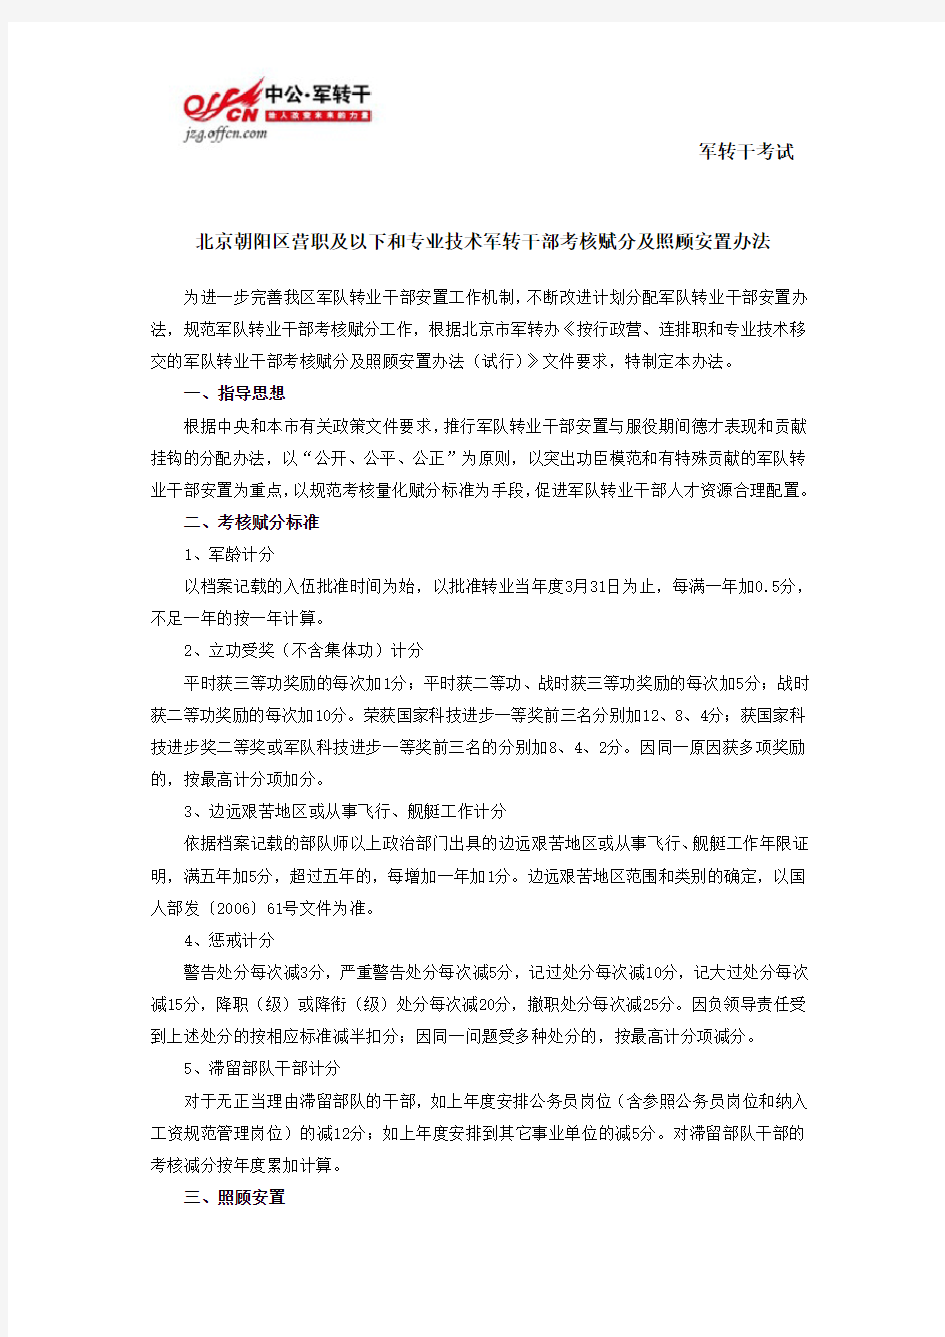 北京朝阳区营职及以下和专业技术军转干部考核赋分及照顾安置办法